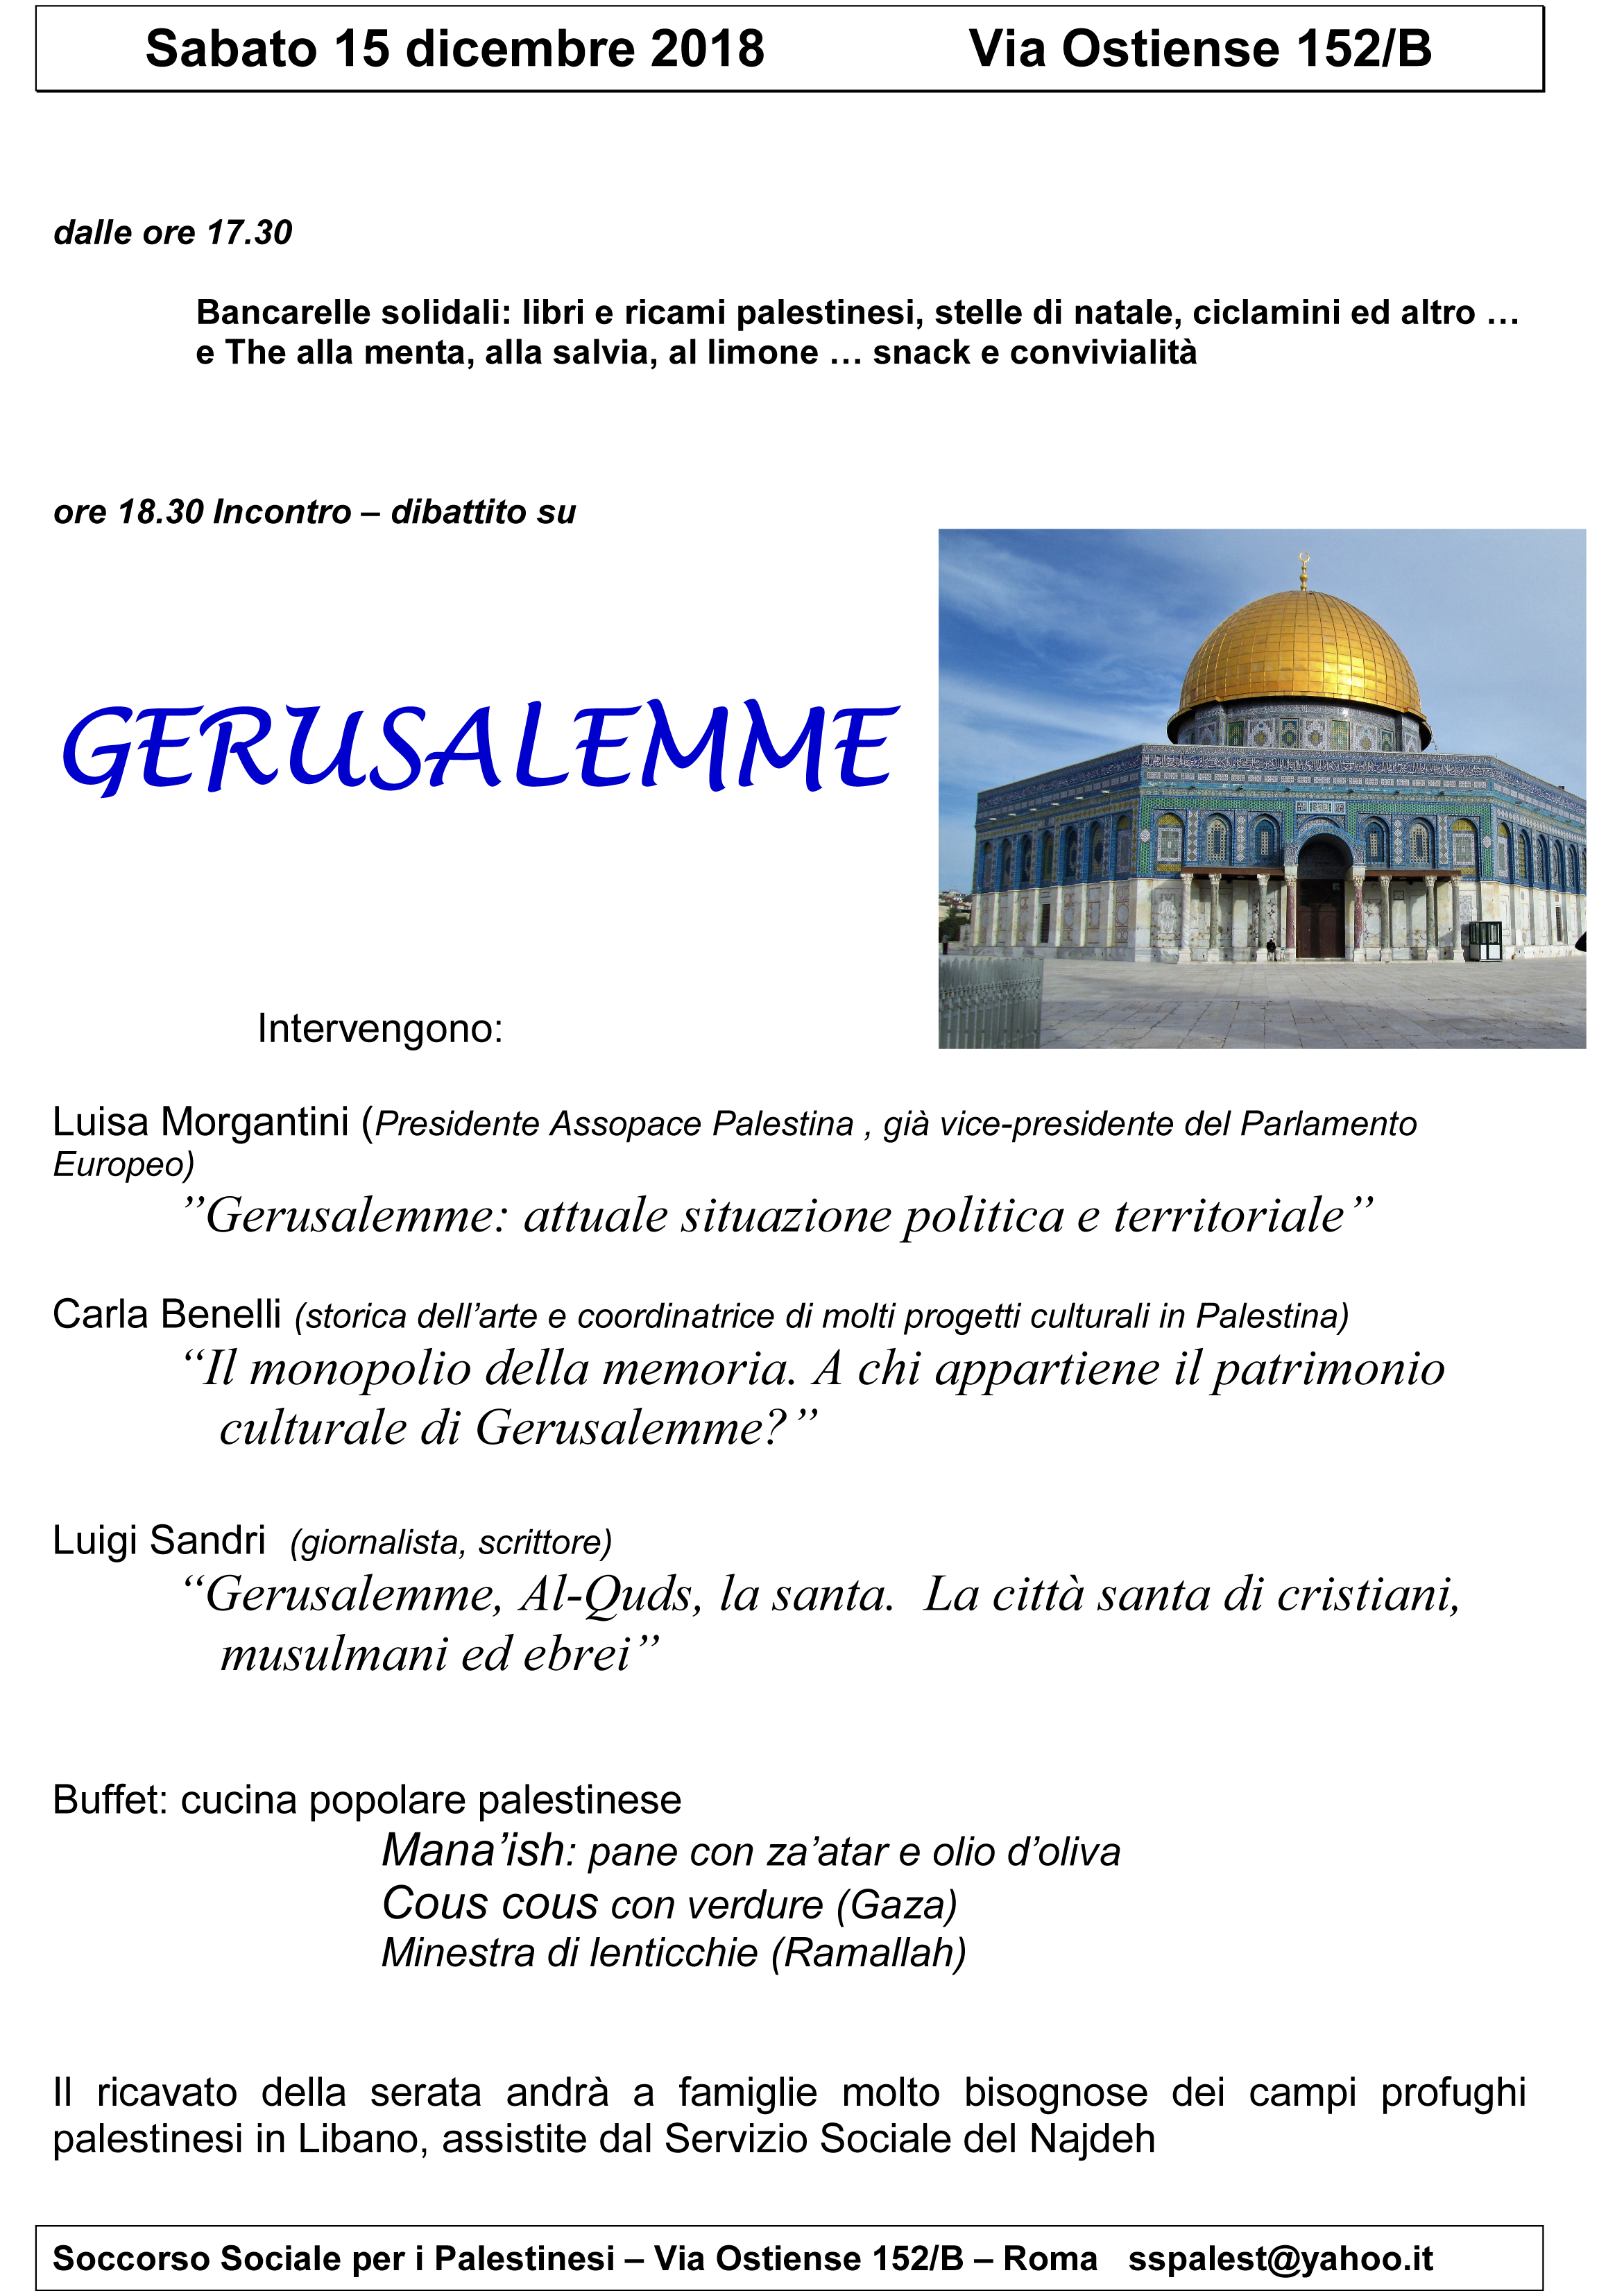 Roma 15 dicembre: Serata Soccorso Palestinese.